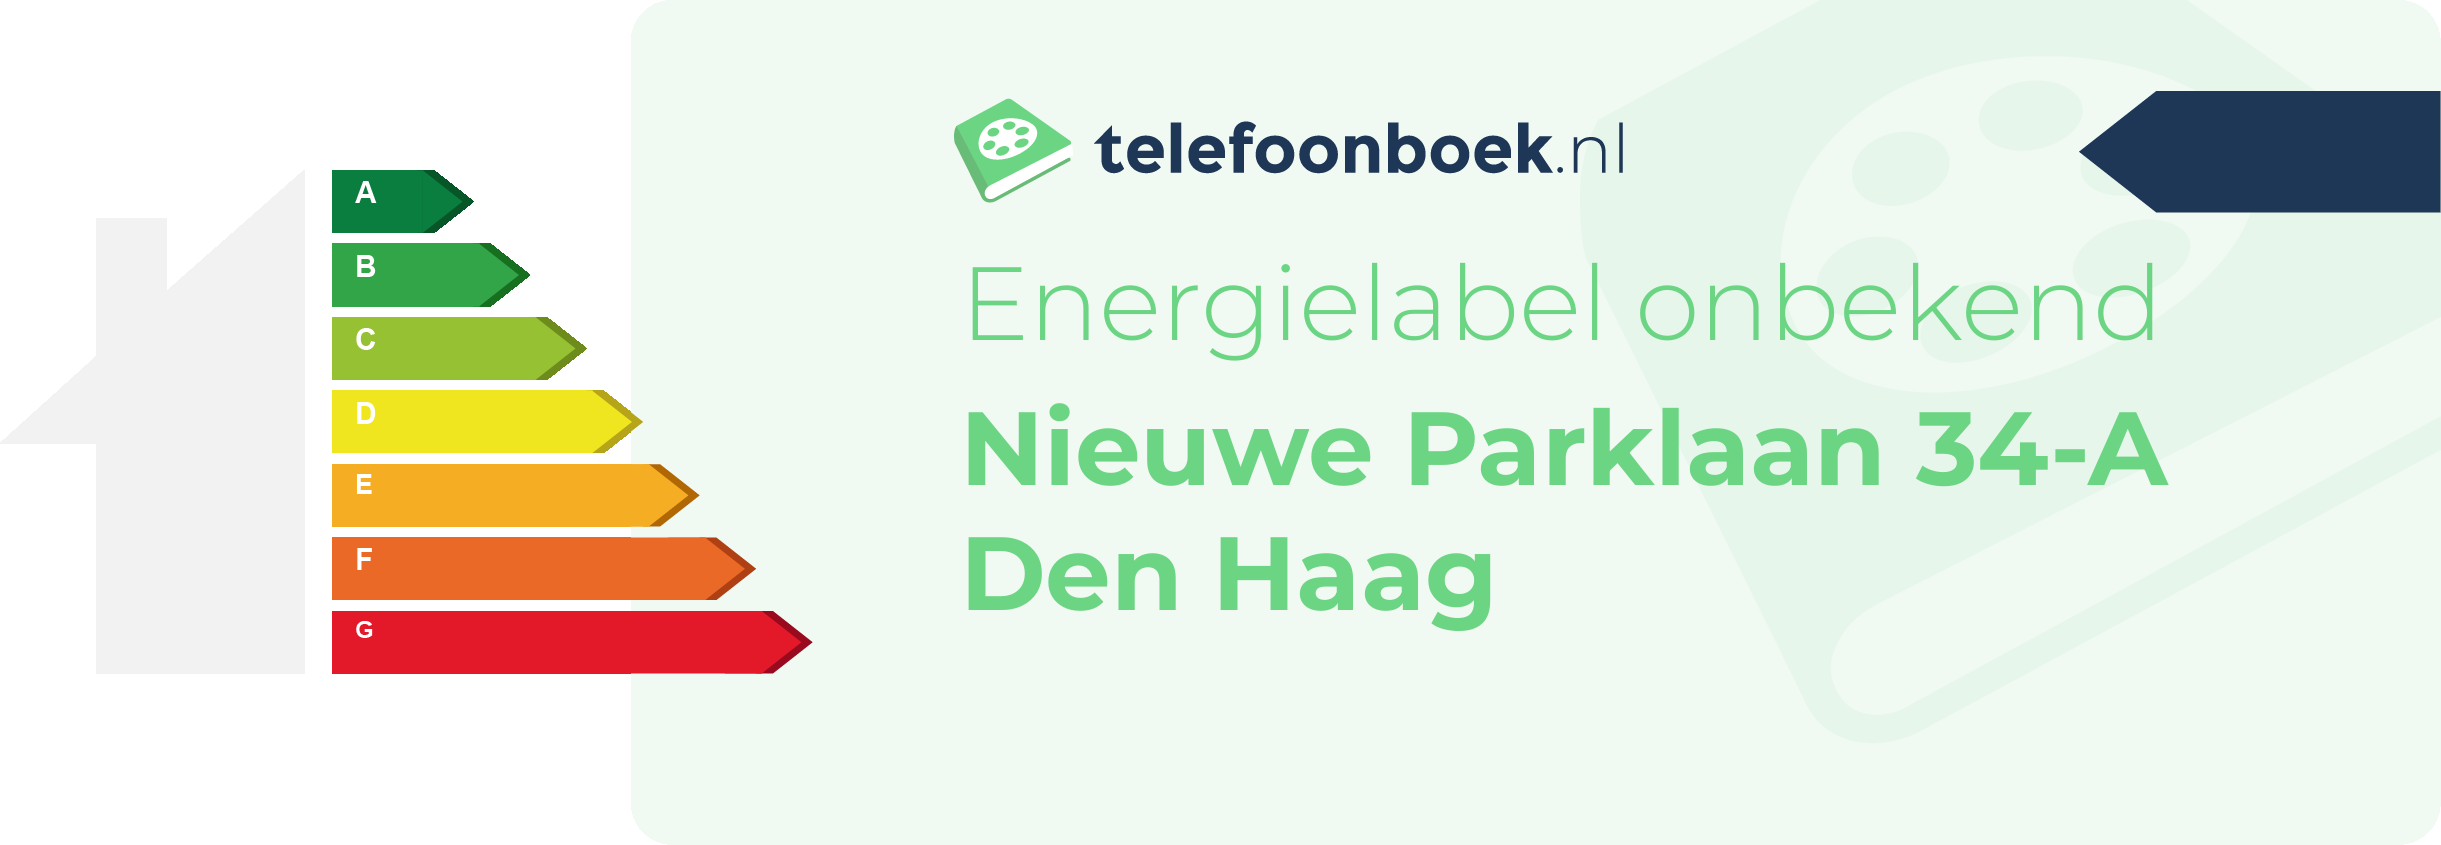 Energielabel Nieuwe Parklaan 34-A Den Haag